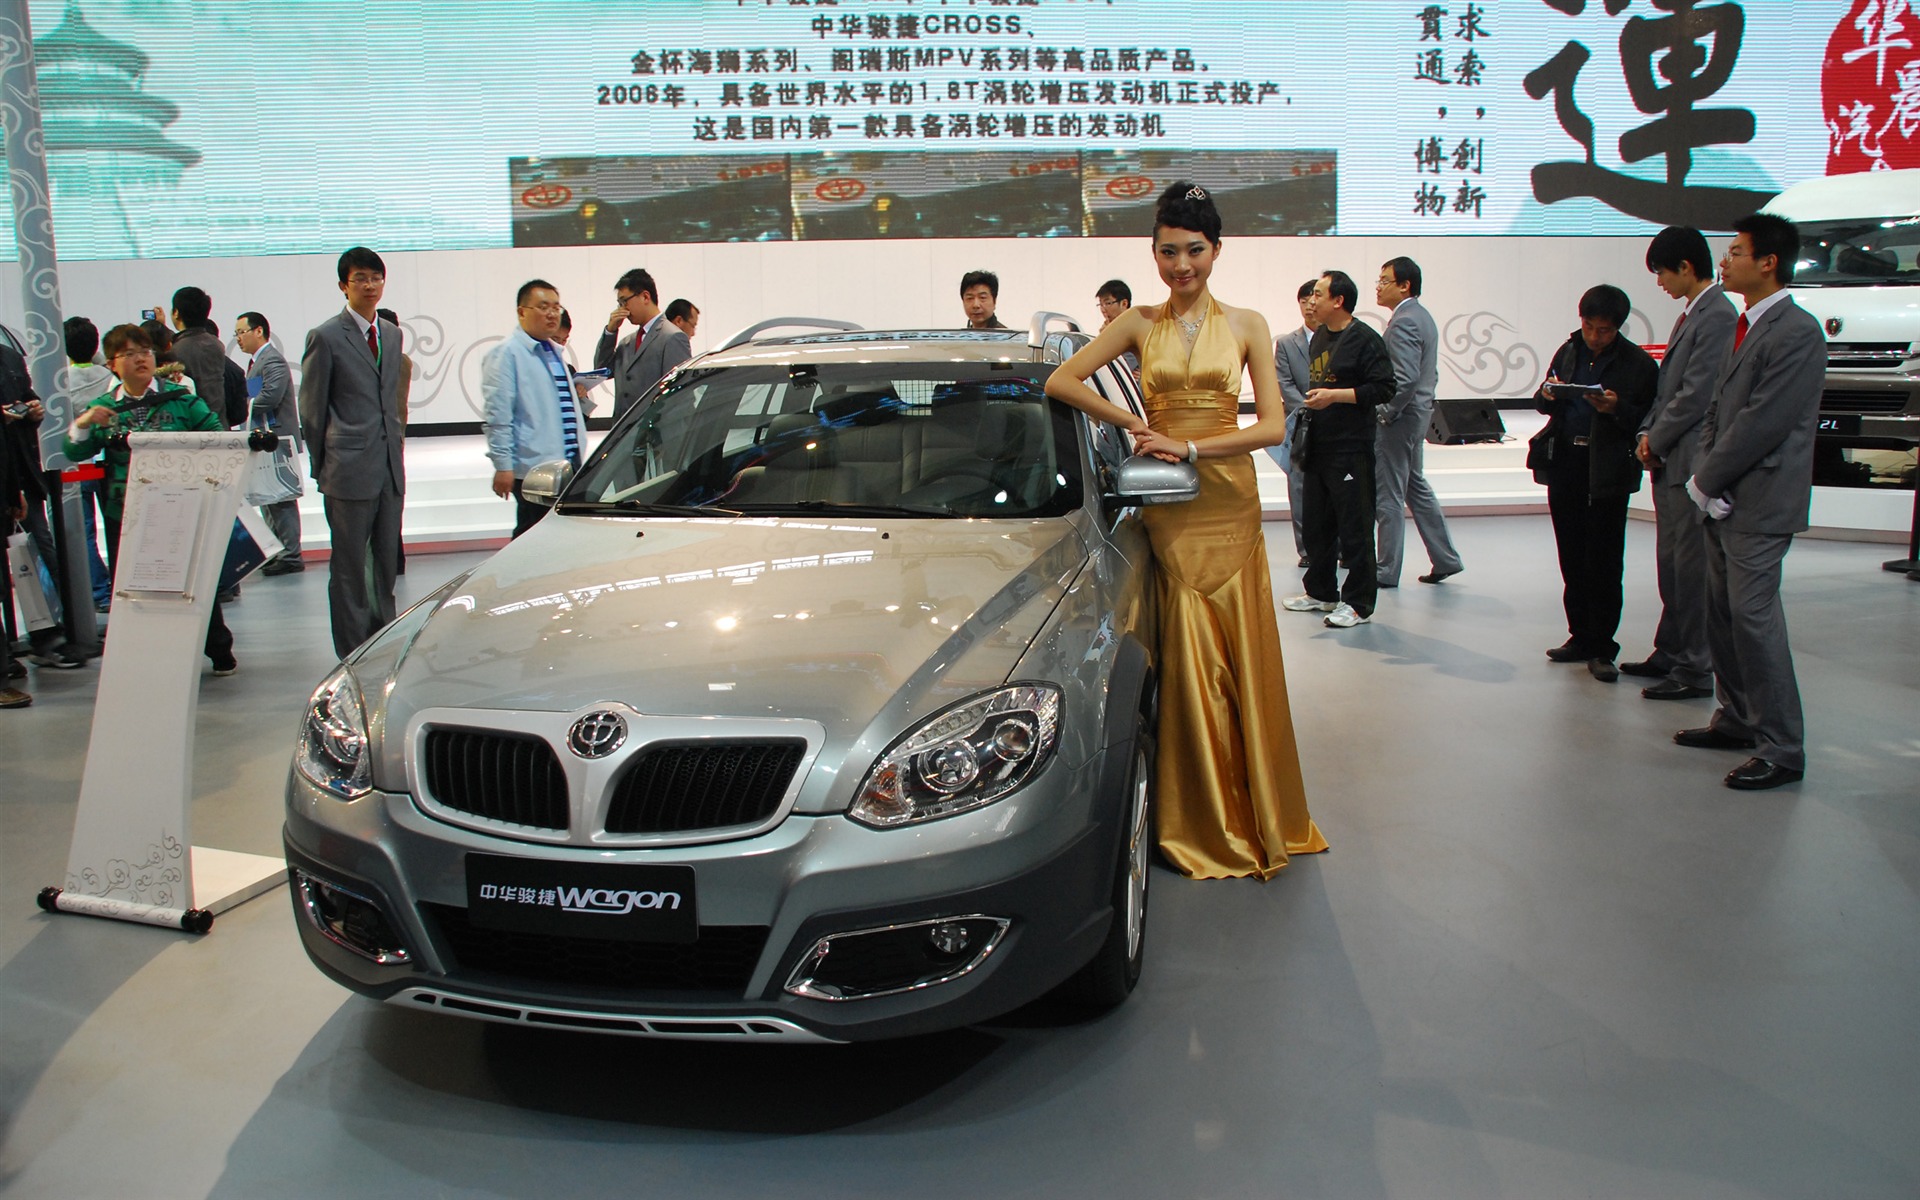 2010 Beijing International Auto Show (1) (z321x123 works) #18 - 1920x1200